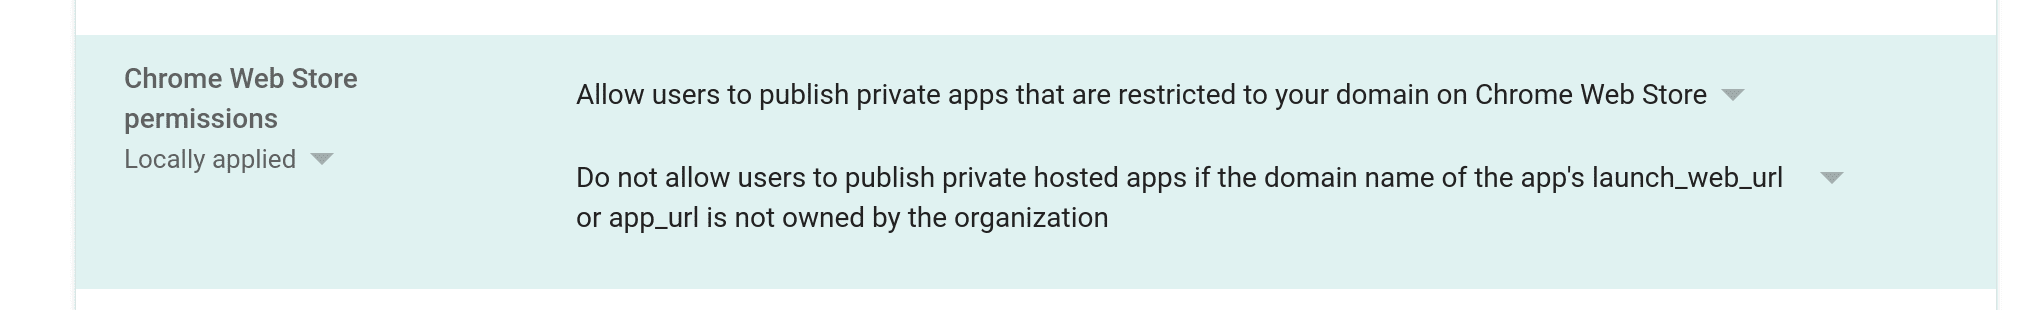 Screenshot der Option zur
Aktivierung der Veröffentlichung privater Domains